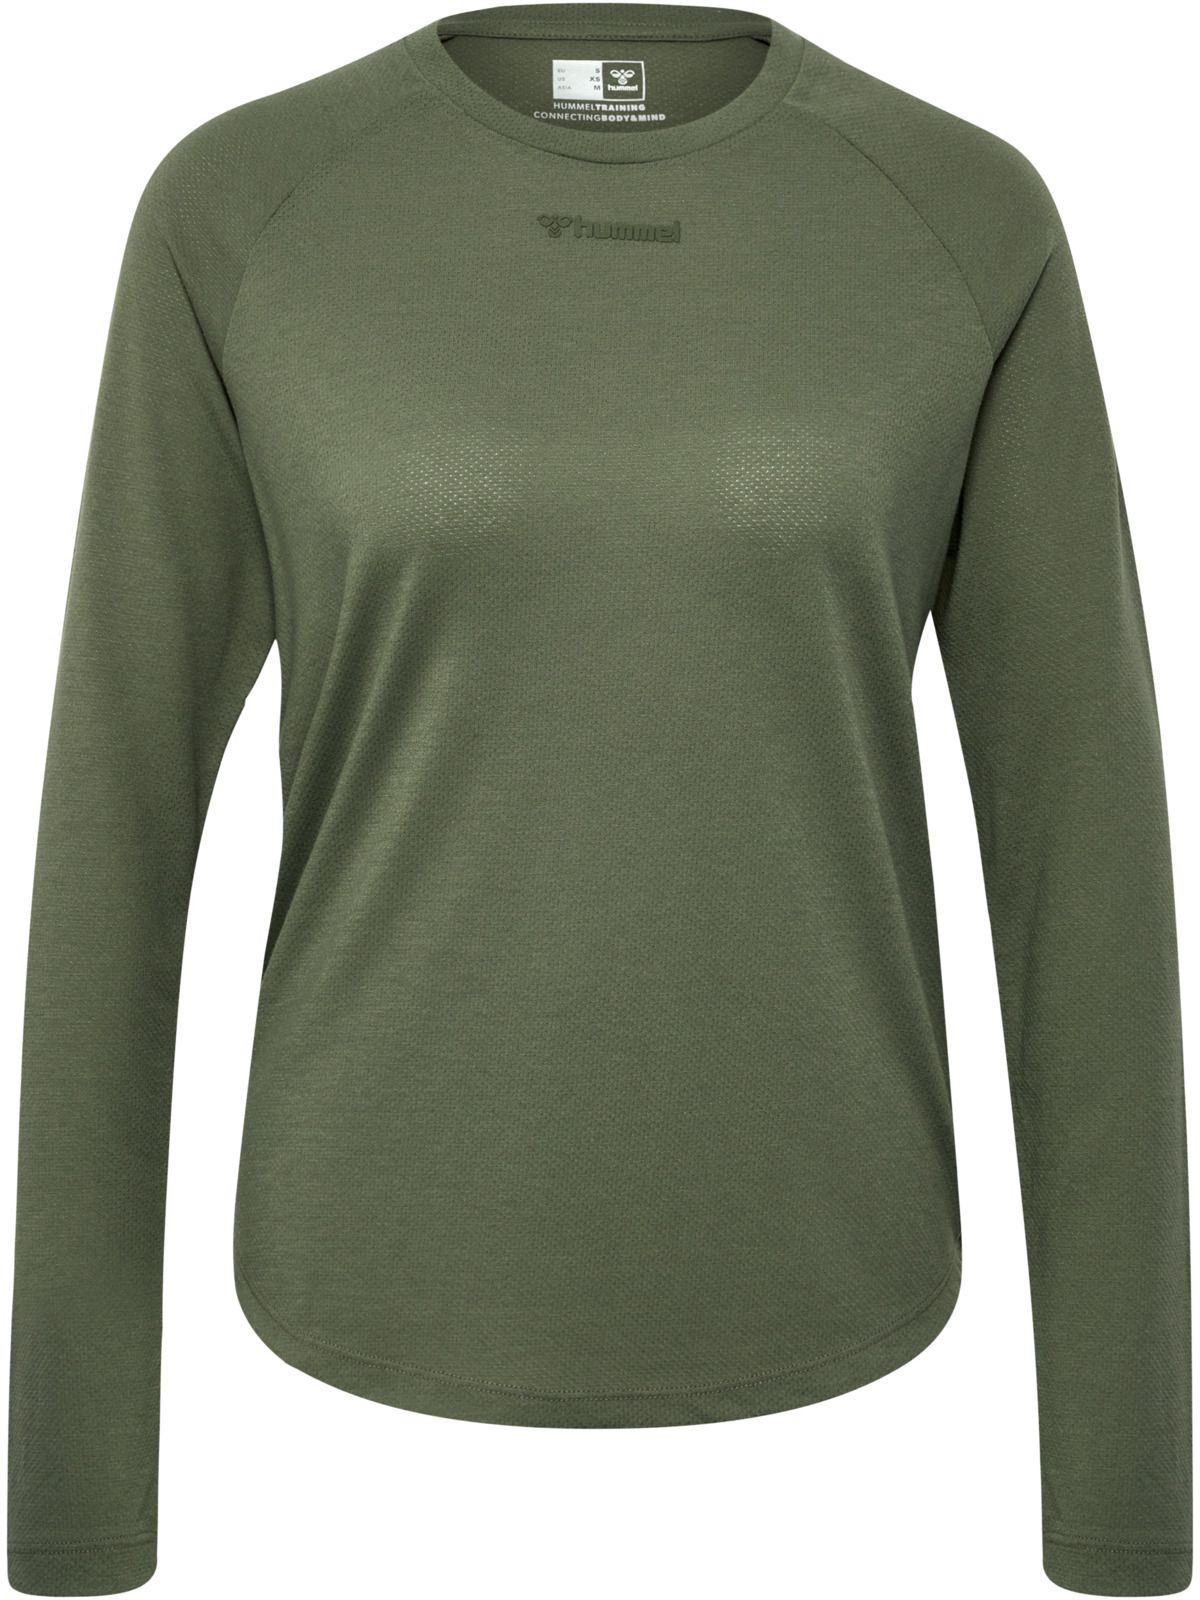 Women's hmlMT Vanja T-Shirt L/S Deep Lichen Green